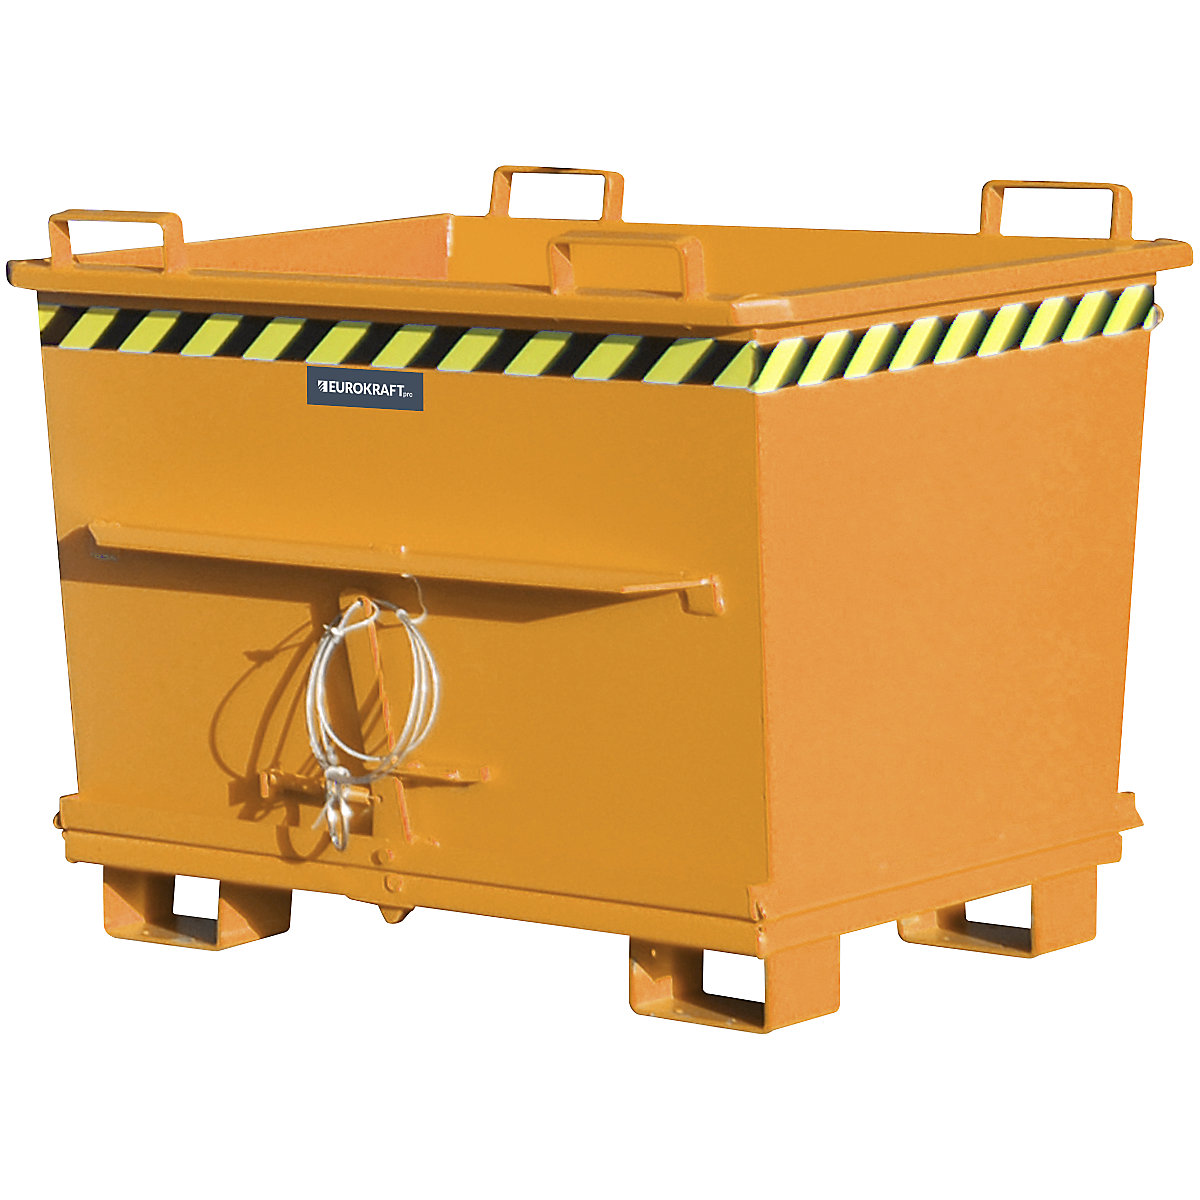 Contenedor cónico con trampilla – eurokraft pro, capacidad 0,7 m³, carga máx. 1500 kg, amarillo naranja RAL 2000-14